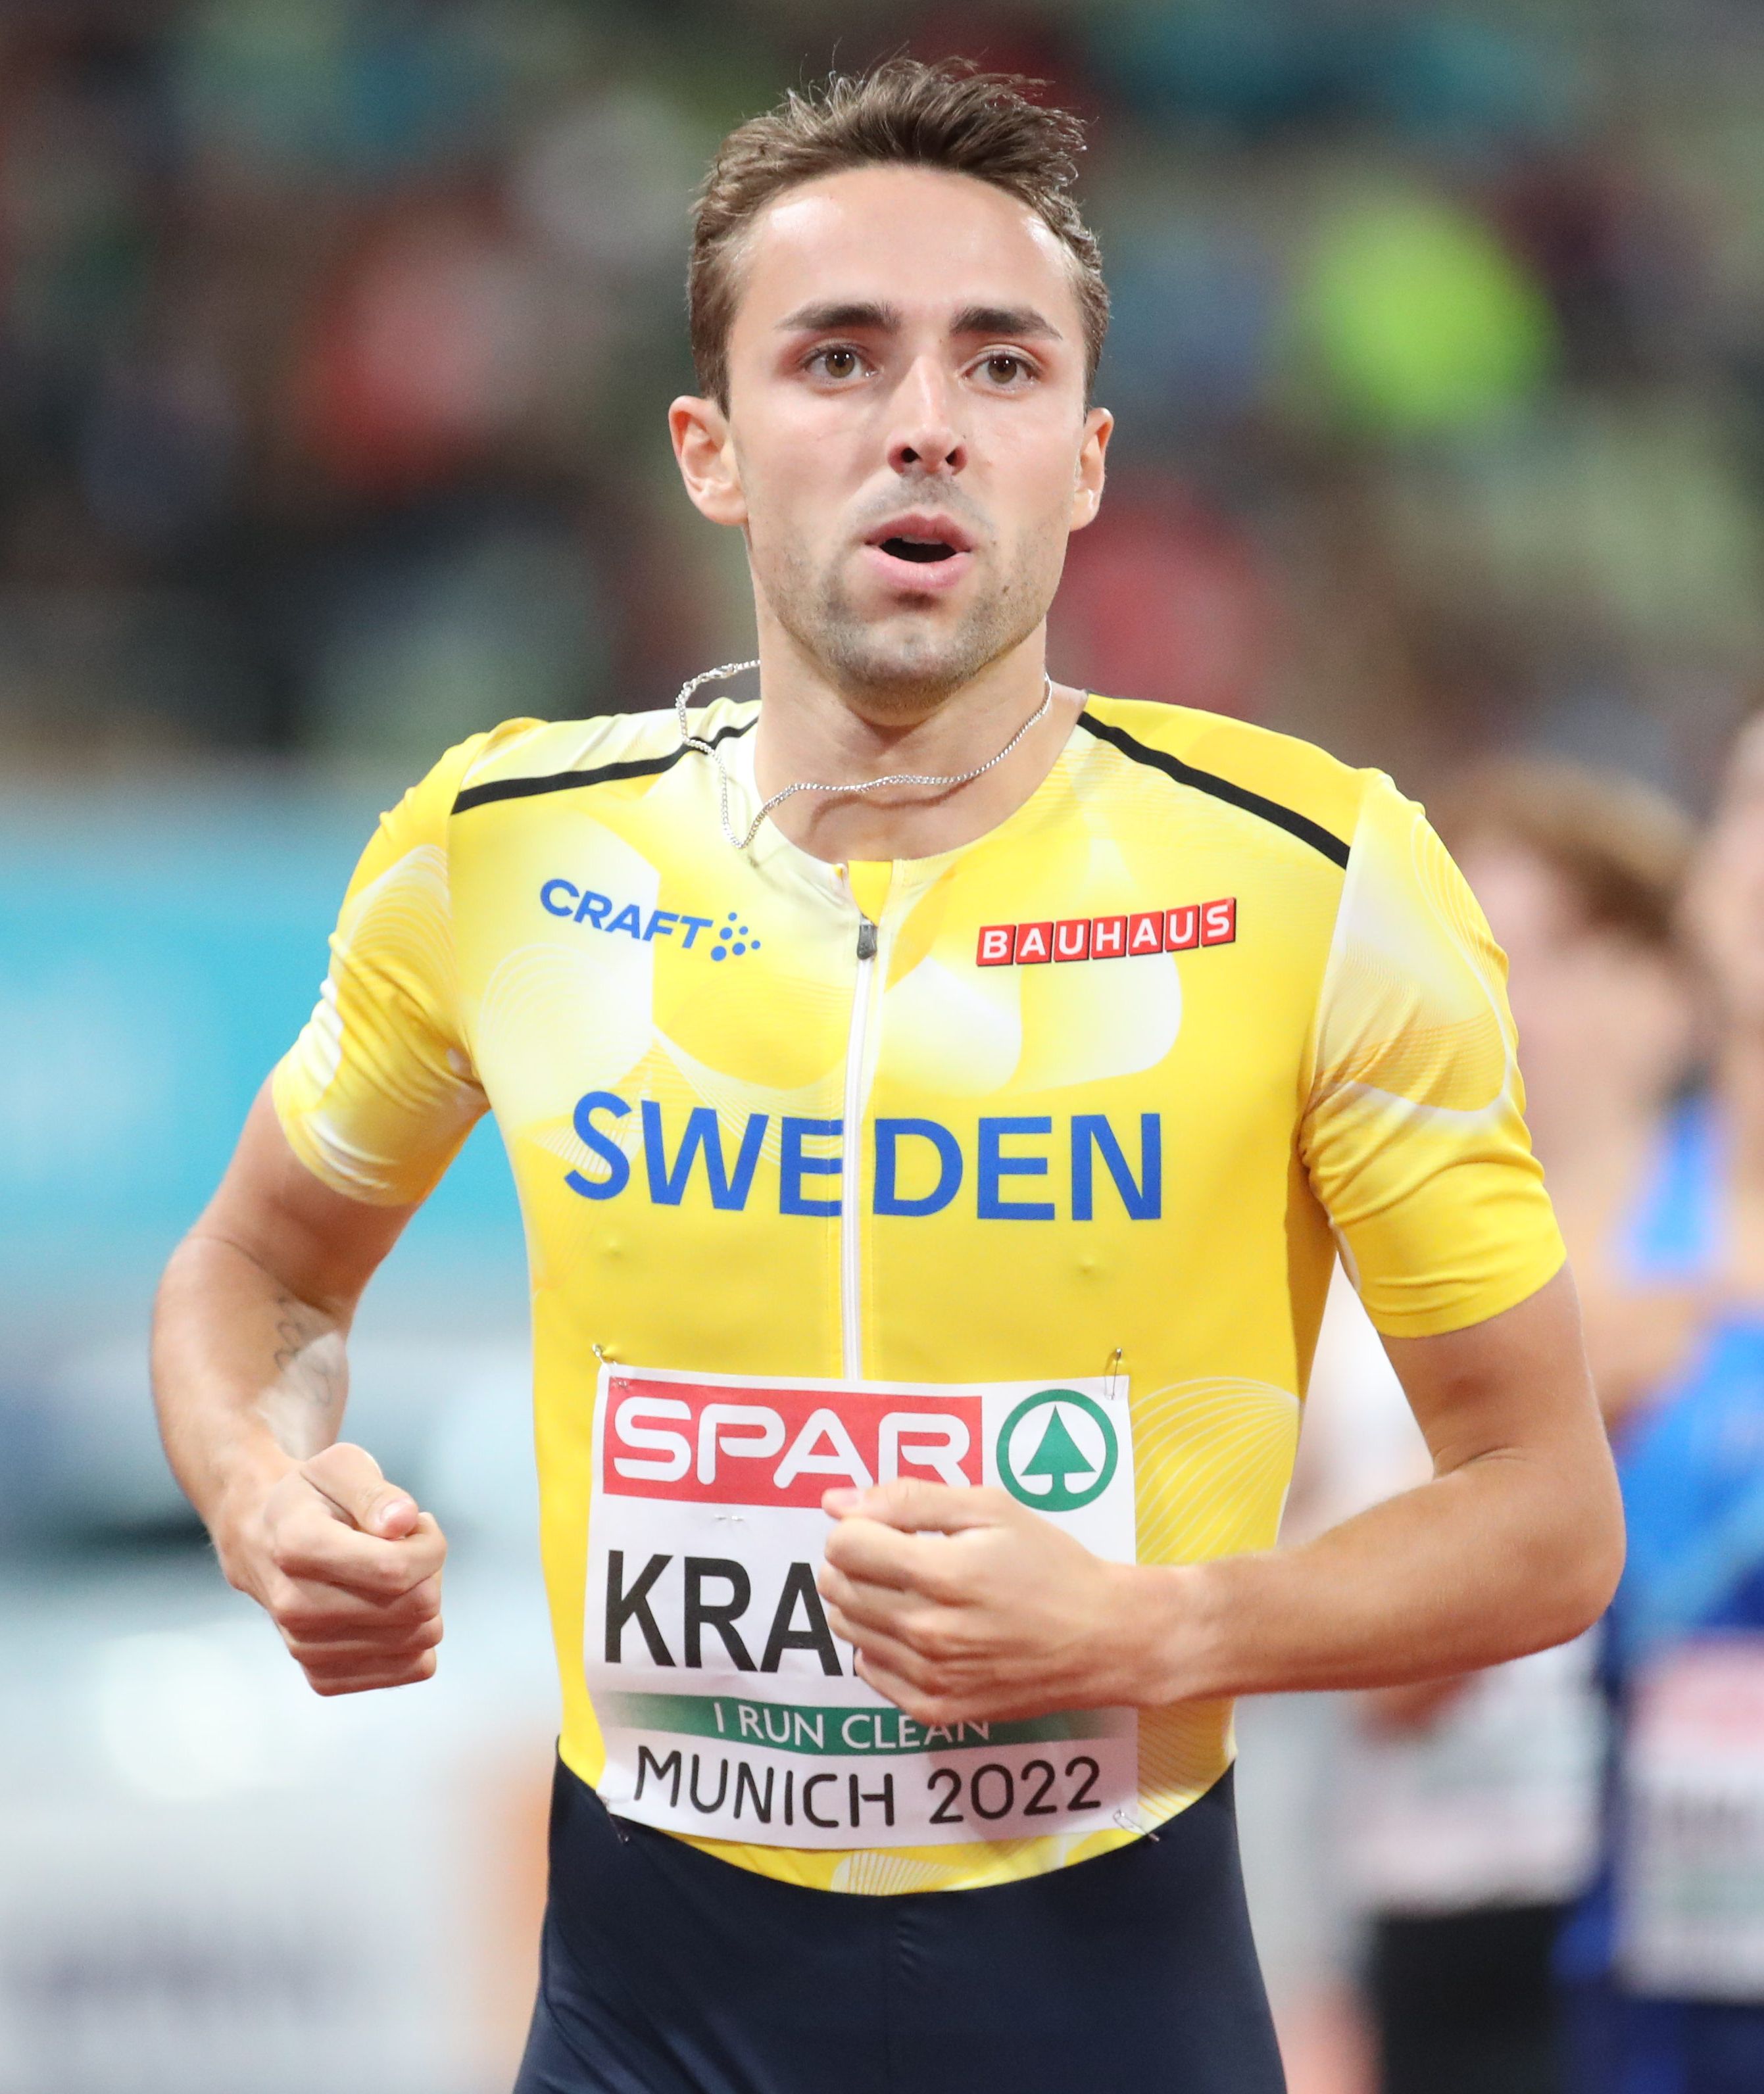 Andreas Kramer in 2022